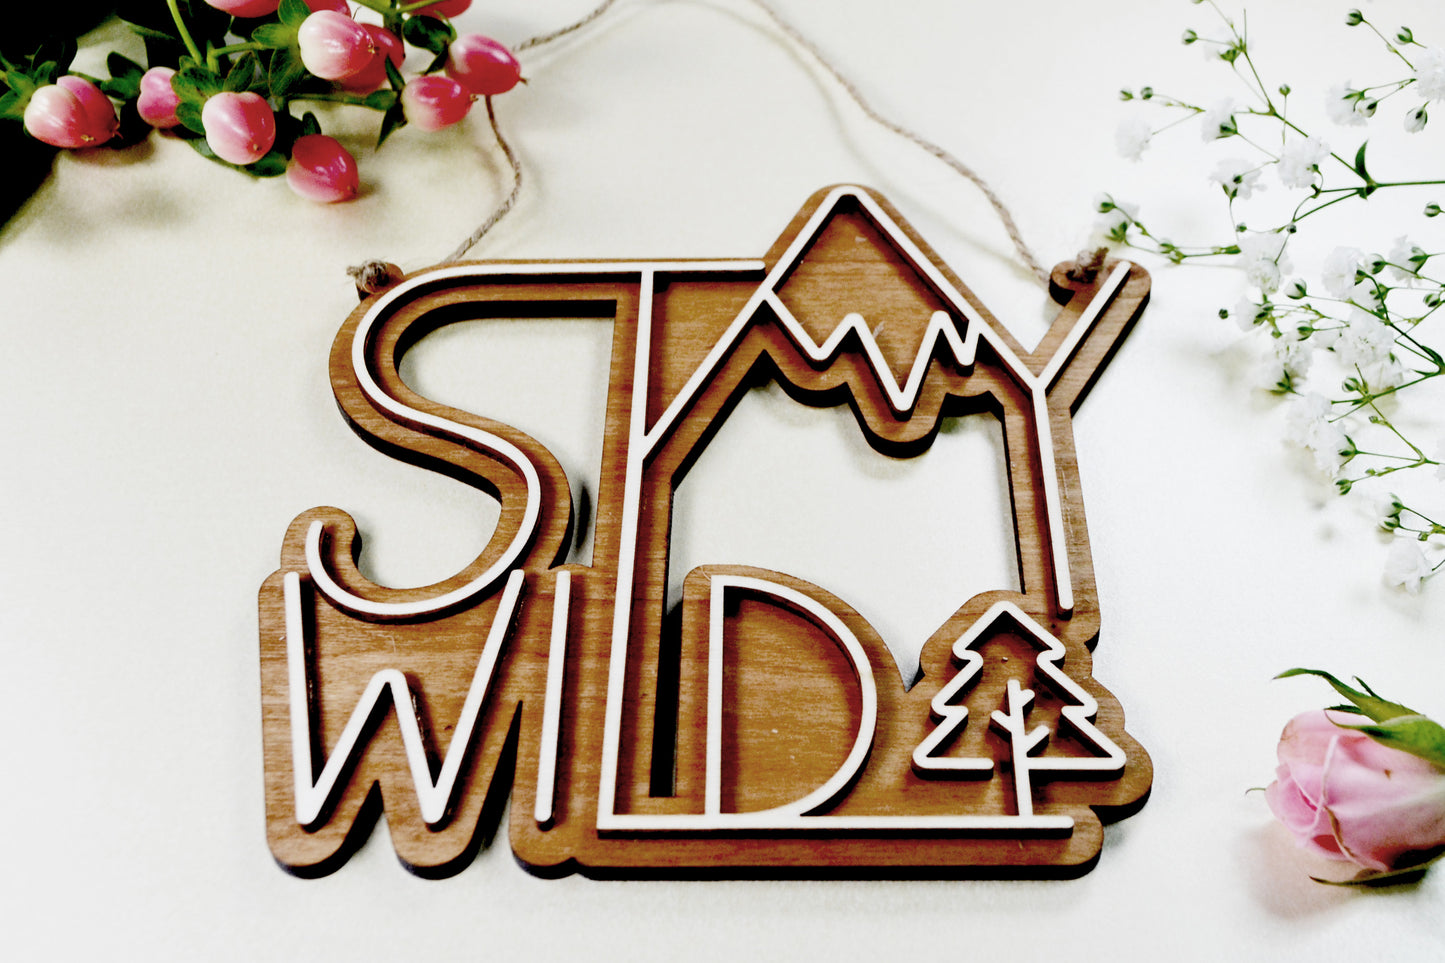 Stay Wild - Adventure Plaque